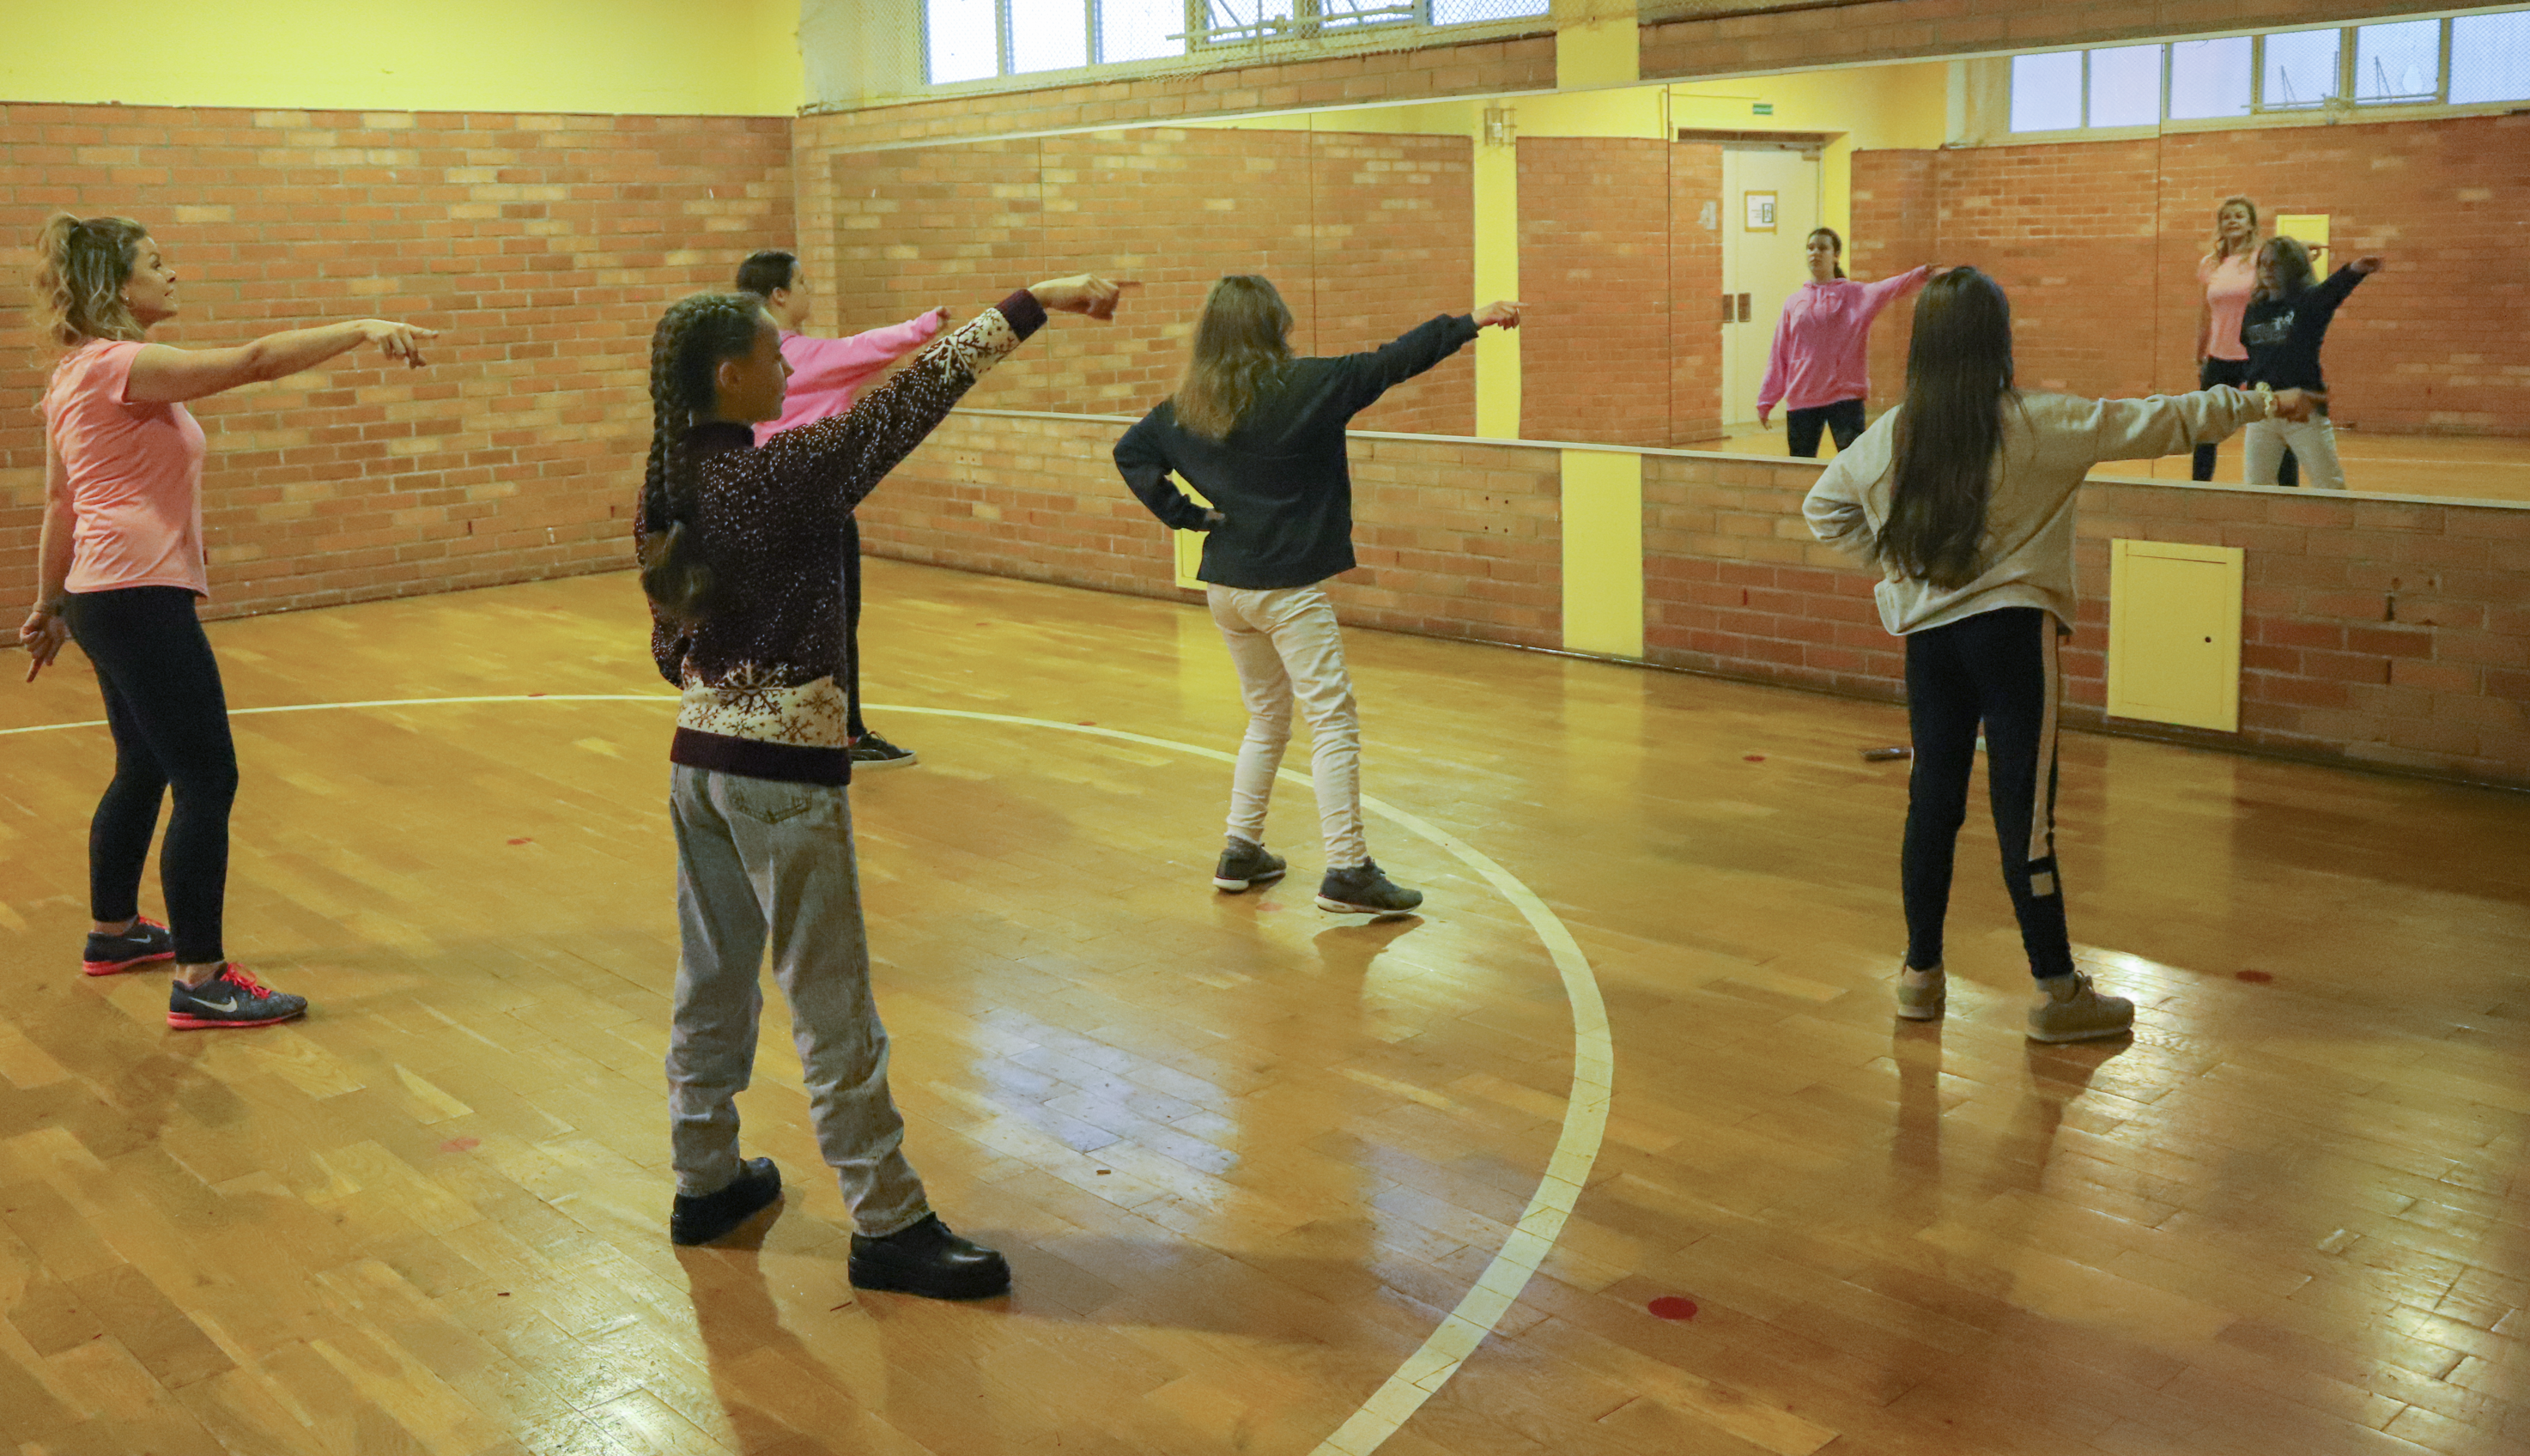 Jugendliche tanzen synchron in einer Sporthalle vor einem großen Spiegel.